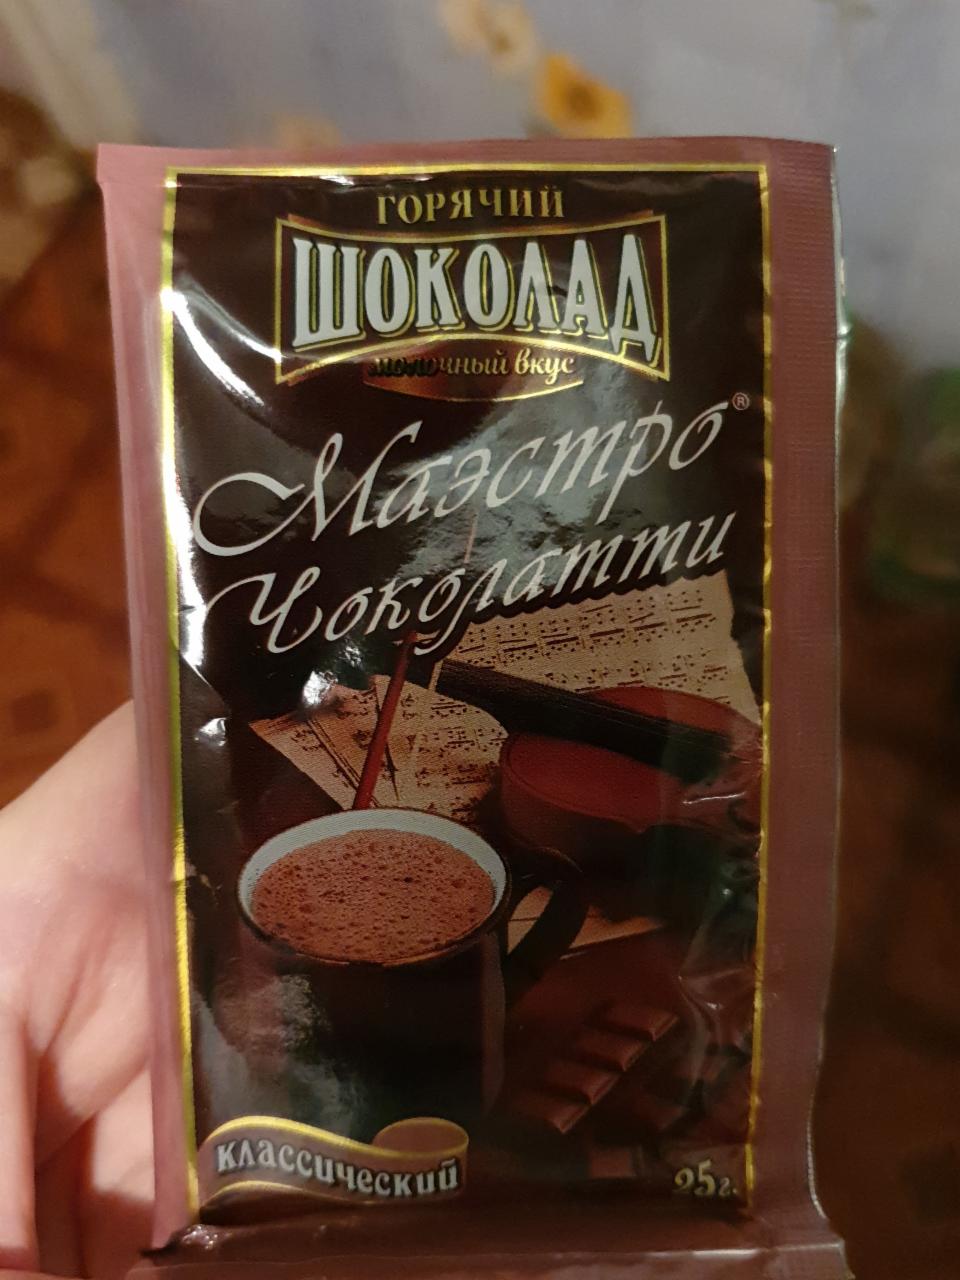 Фото - горячий шоколад Маэстро чоколатти